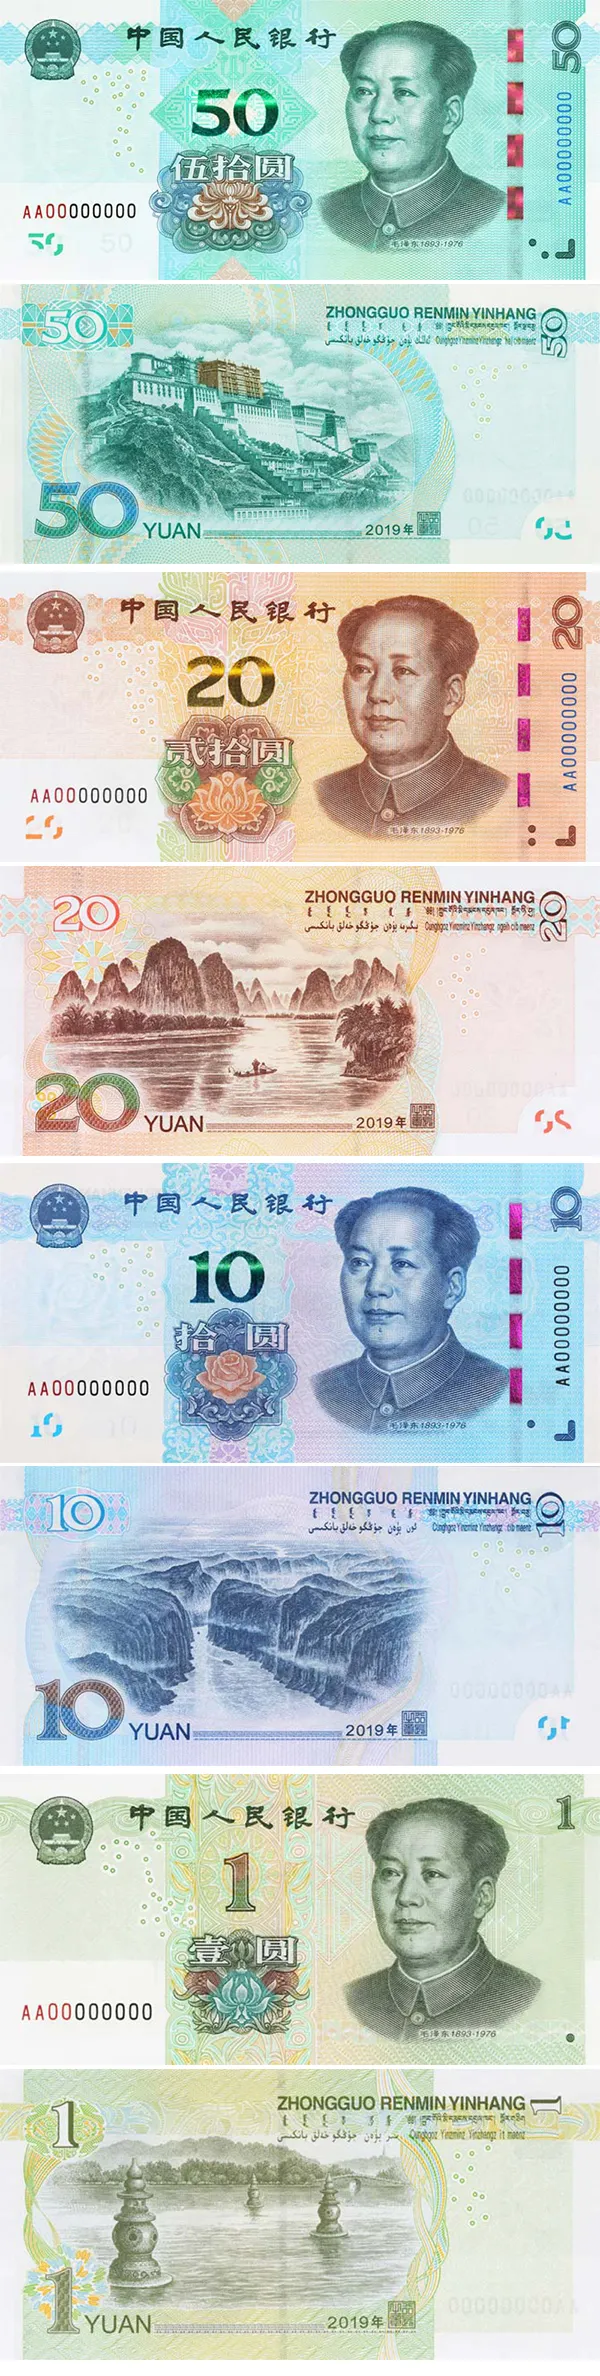 新版人民币